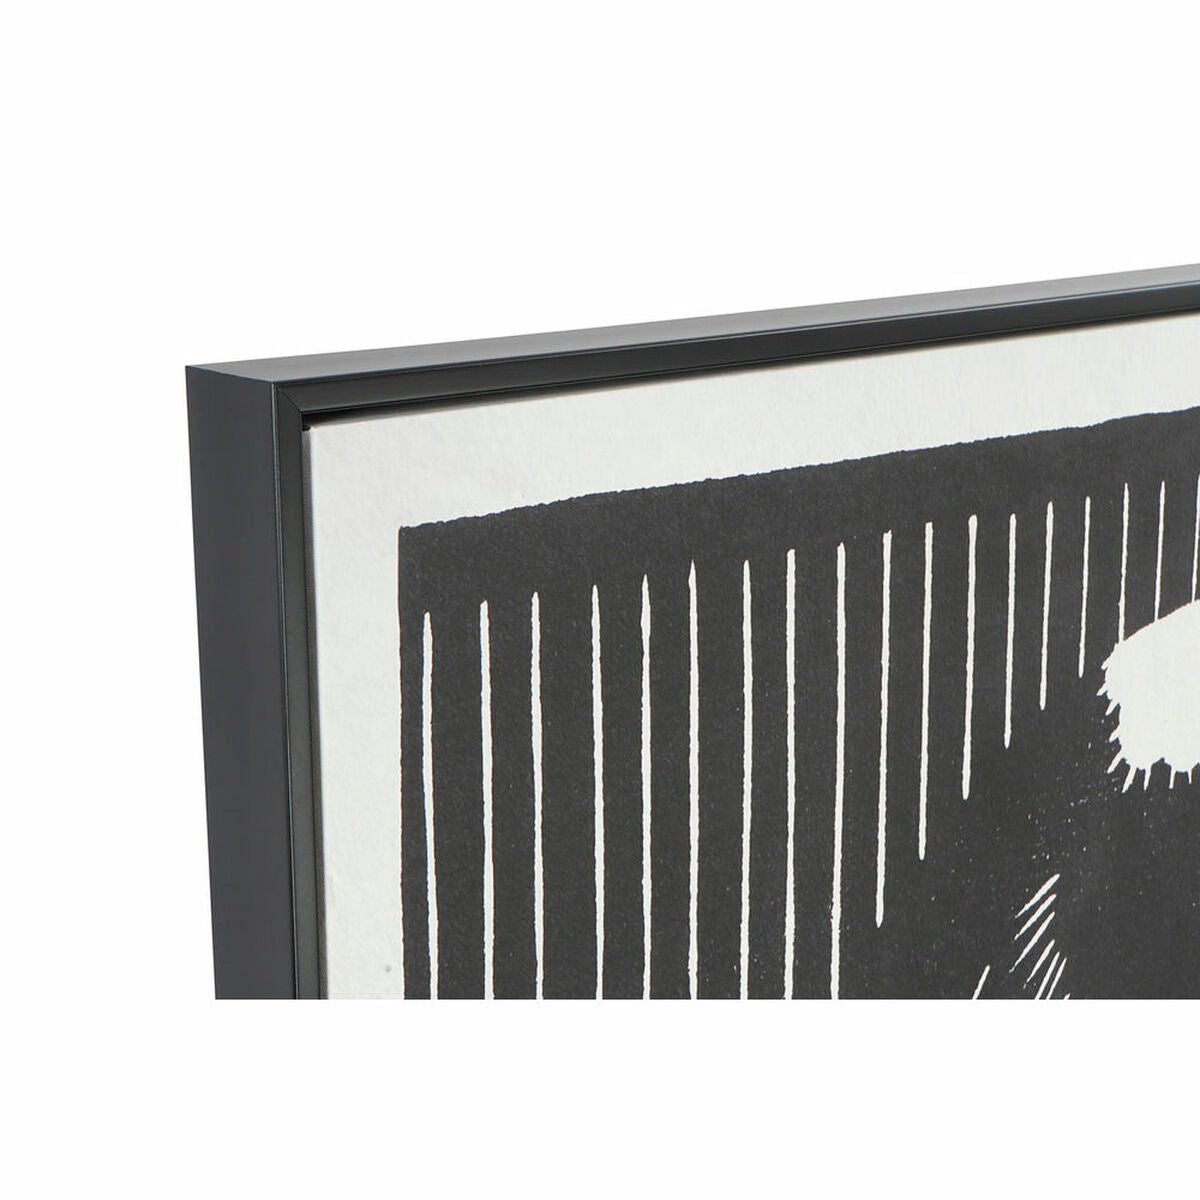 Parrot Design Frame Home Decor Black and White - Juego de 2 marcos modernos enmarcados (83 x 4,5 x 123 cm)